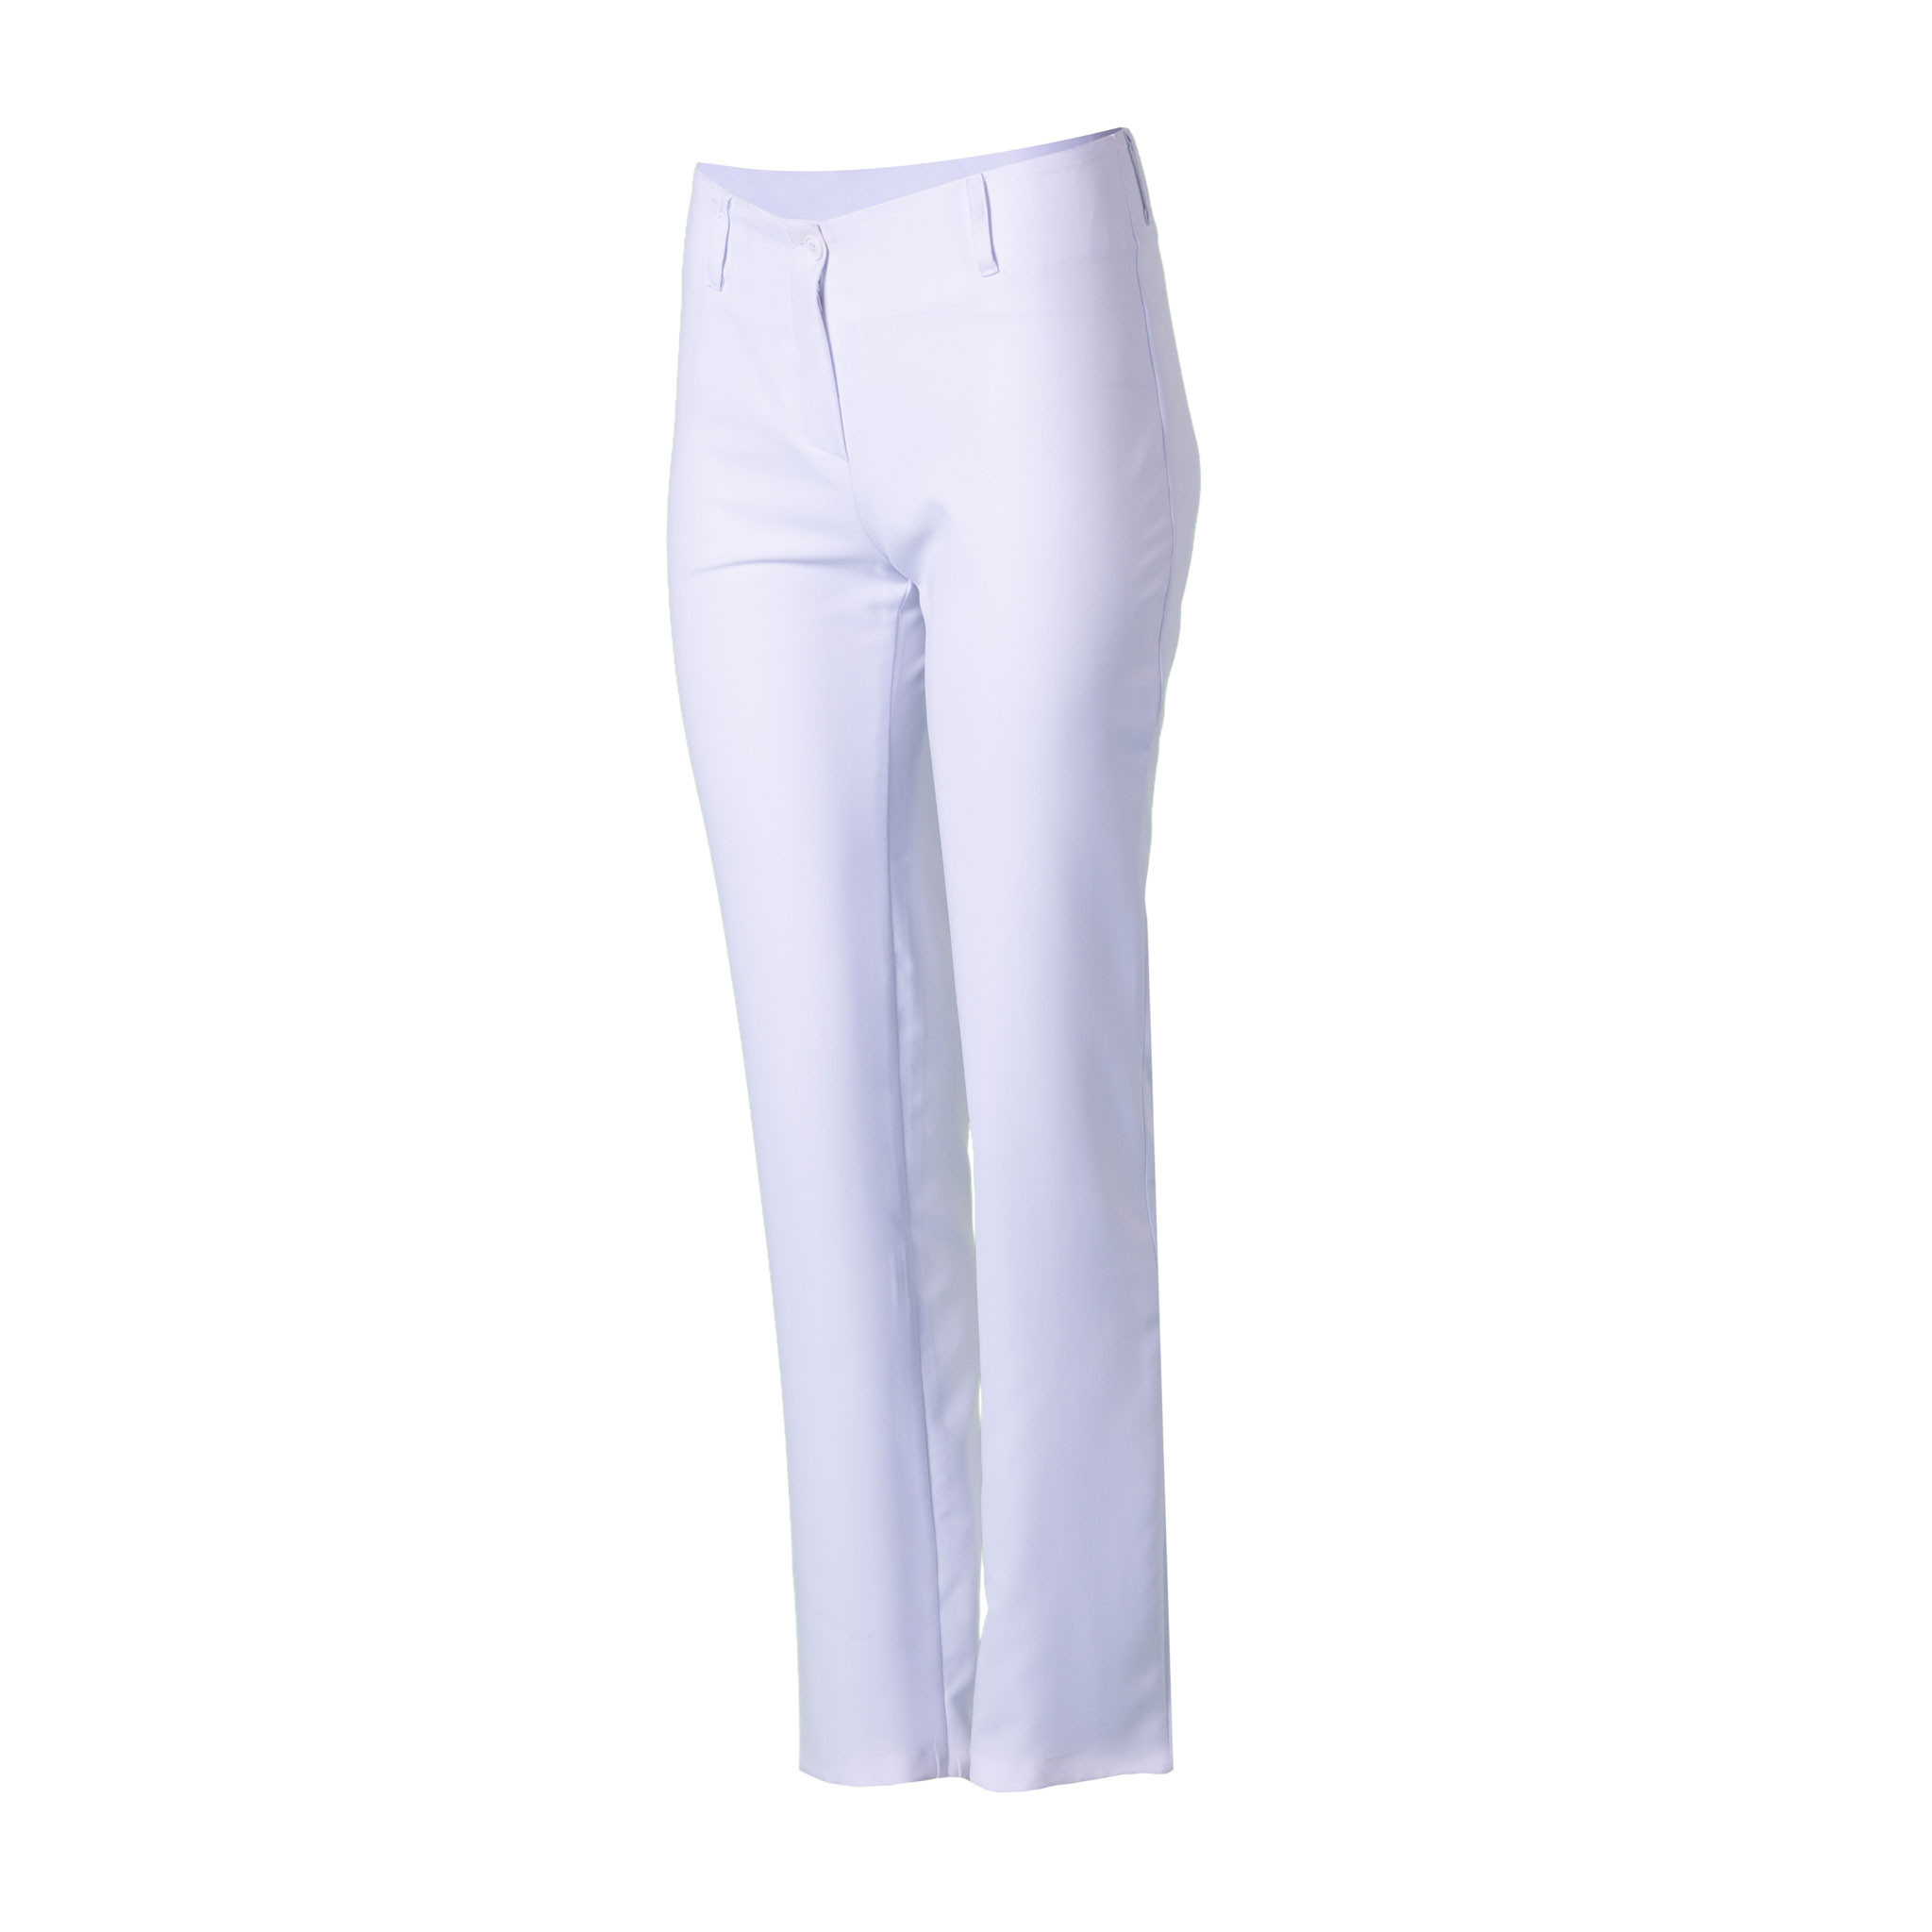 Las mejores ofertas en Pantalones Ajustados Blanco sin marca para mujeres